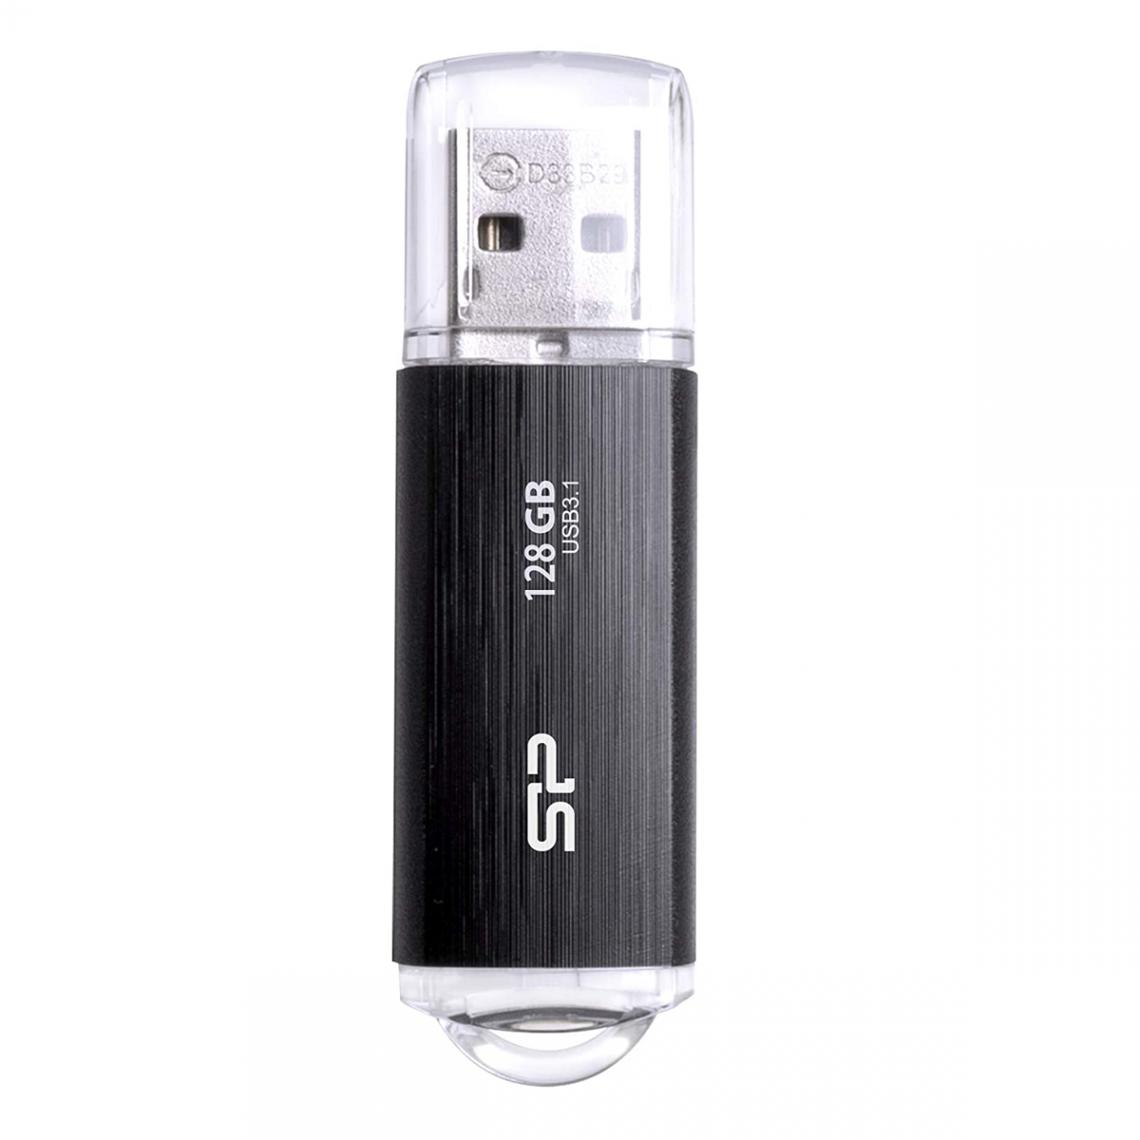 Silicon power - B02 128 Go - Noir - Clés USB